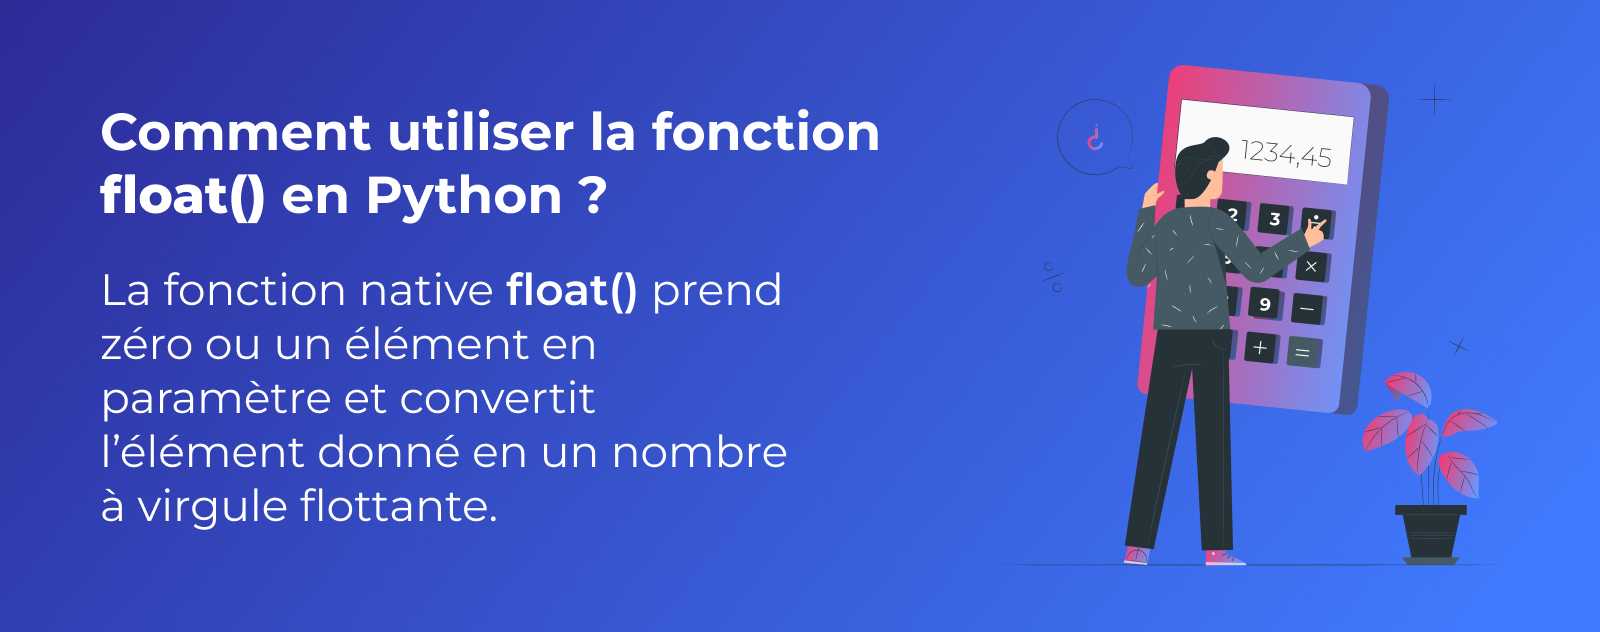 La fonction float en Python